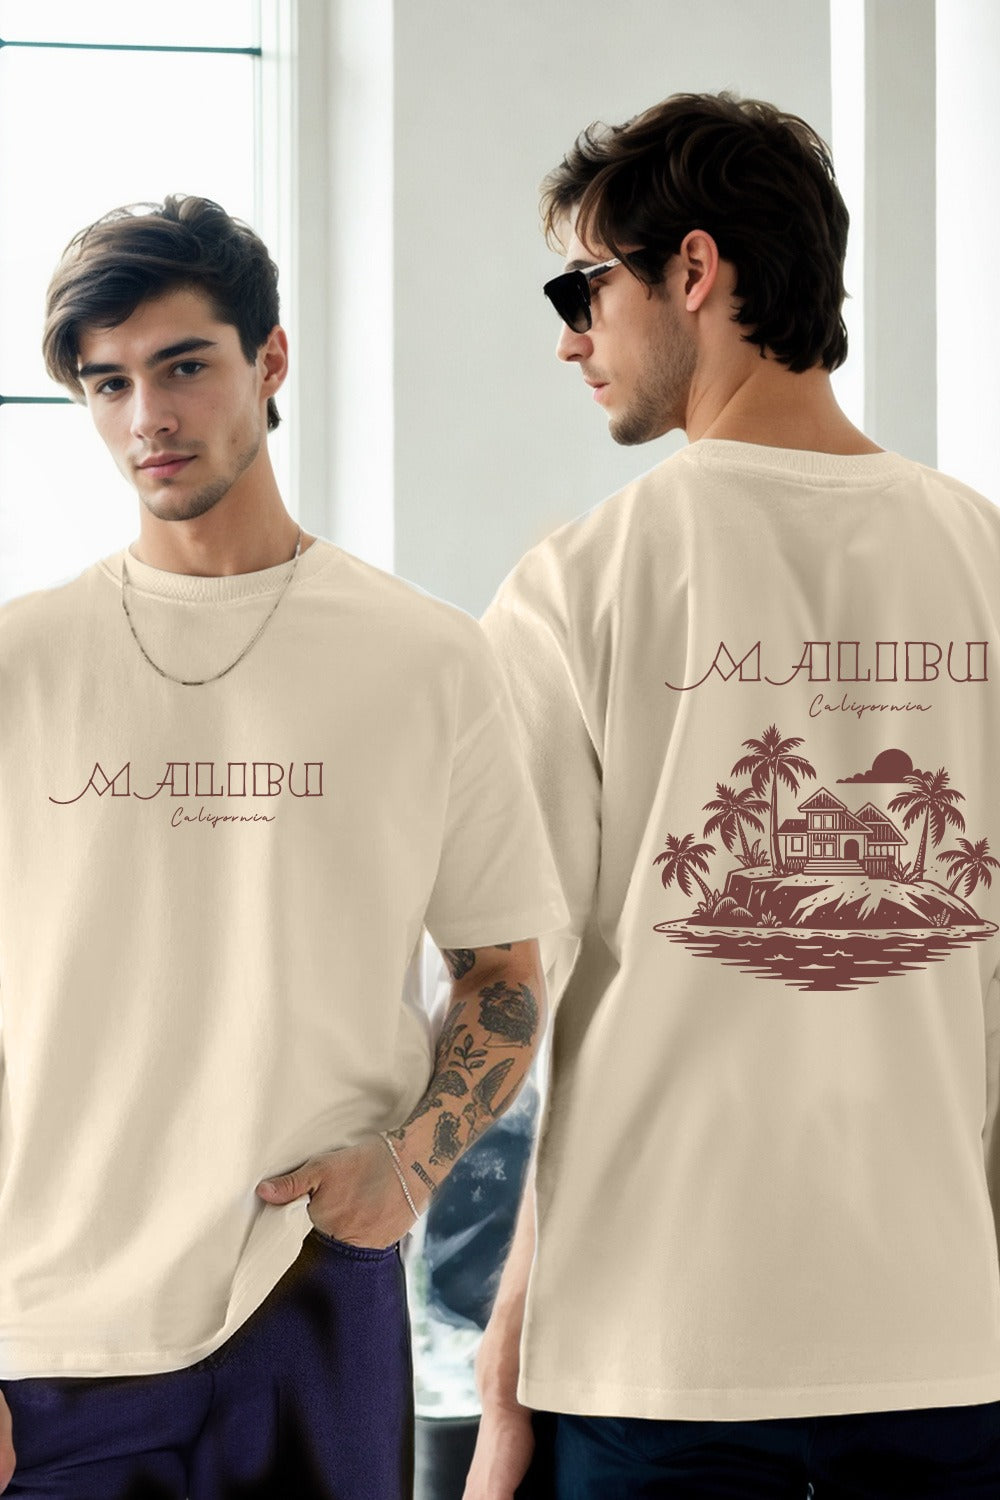 Malibu Oversized T-Shirt